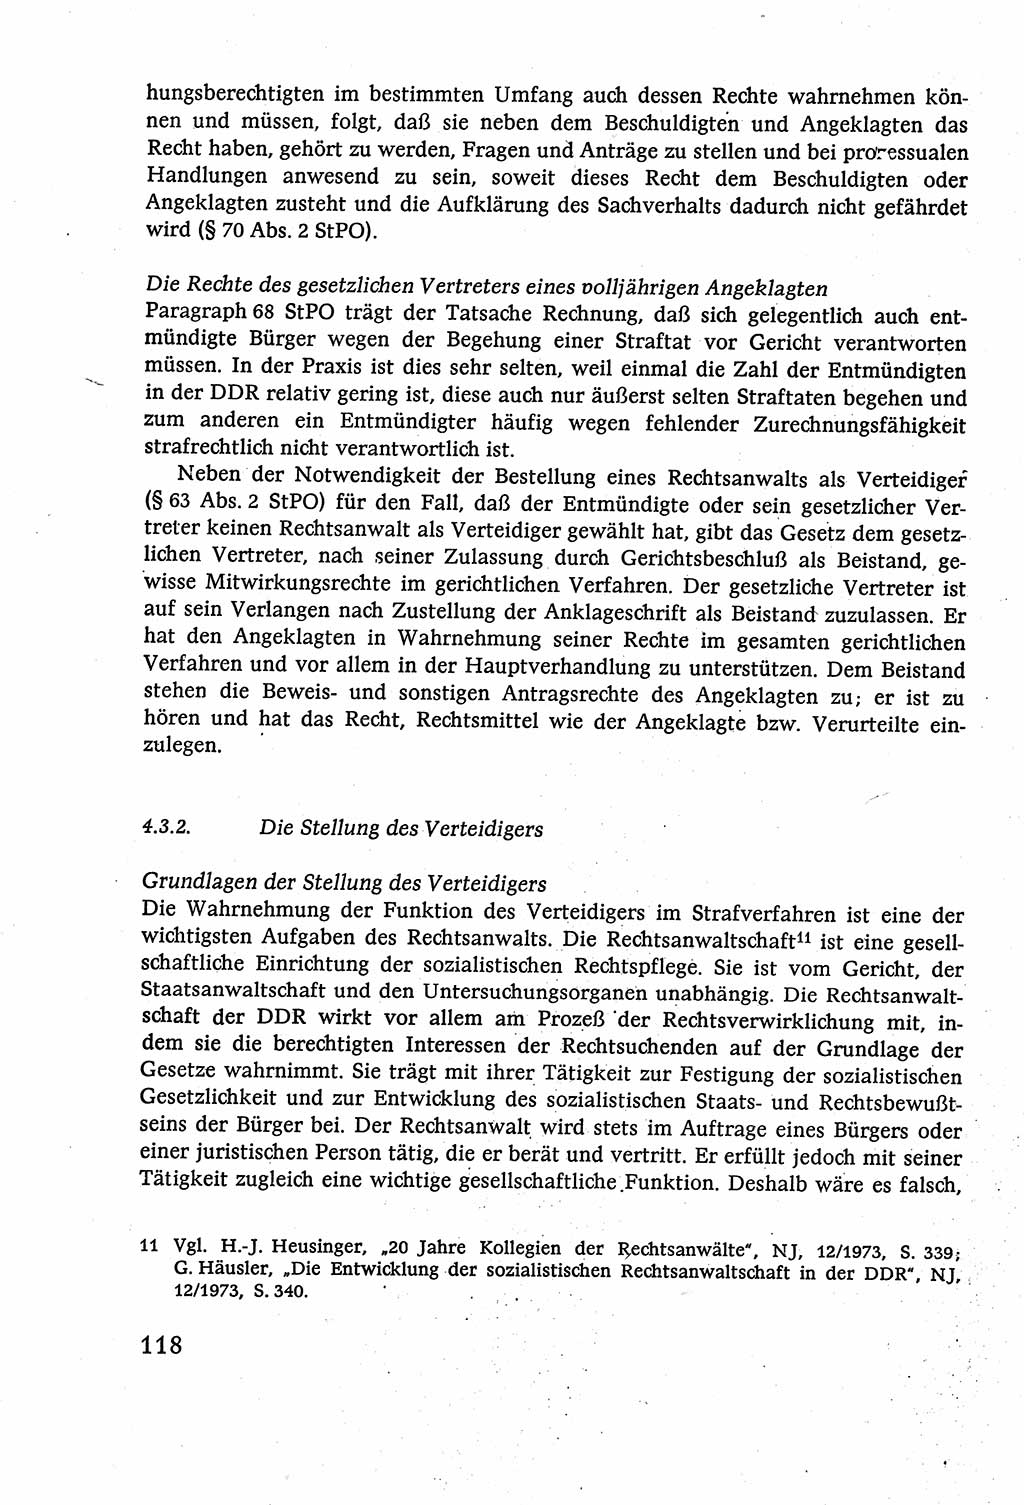 Strafverfahrensrecht [Deutsche Demokratische Republik (DDR)], Lehrbuch 1977, Seite 118 (Strafverf.-R. DDR Lb. 1977, S. 118)